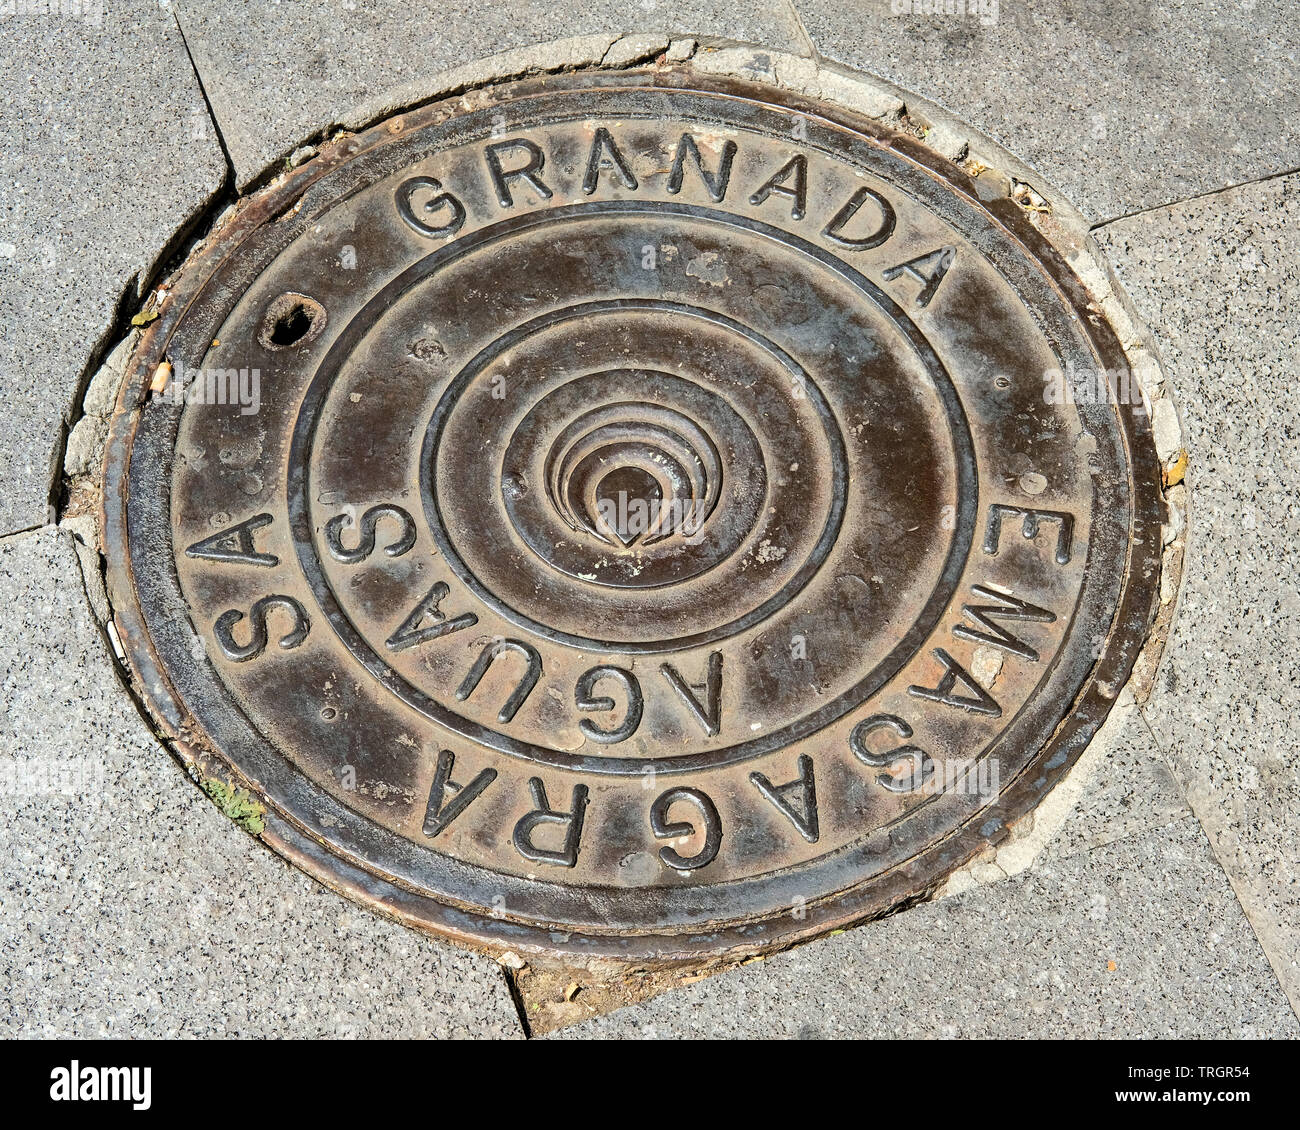 Emsagra circular drain man hole cover in Granada, Spain. Stock Photo